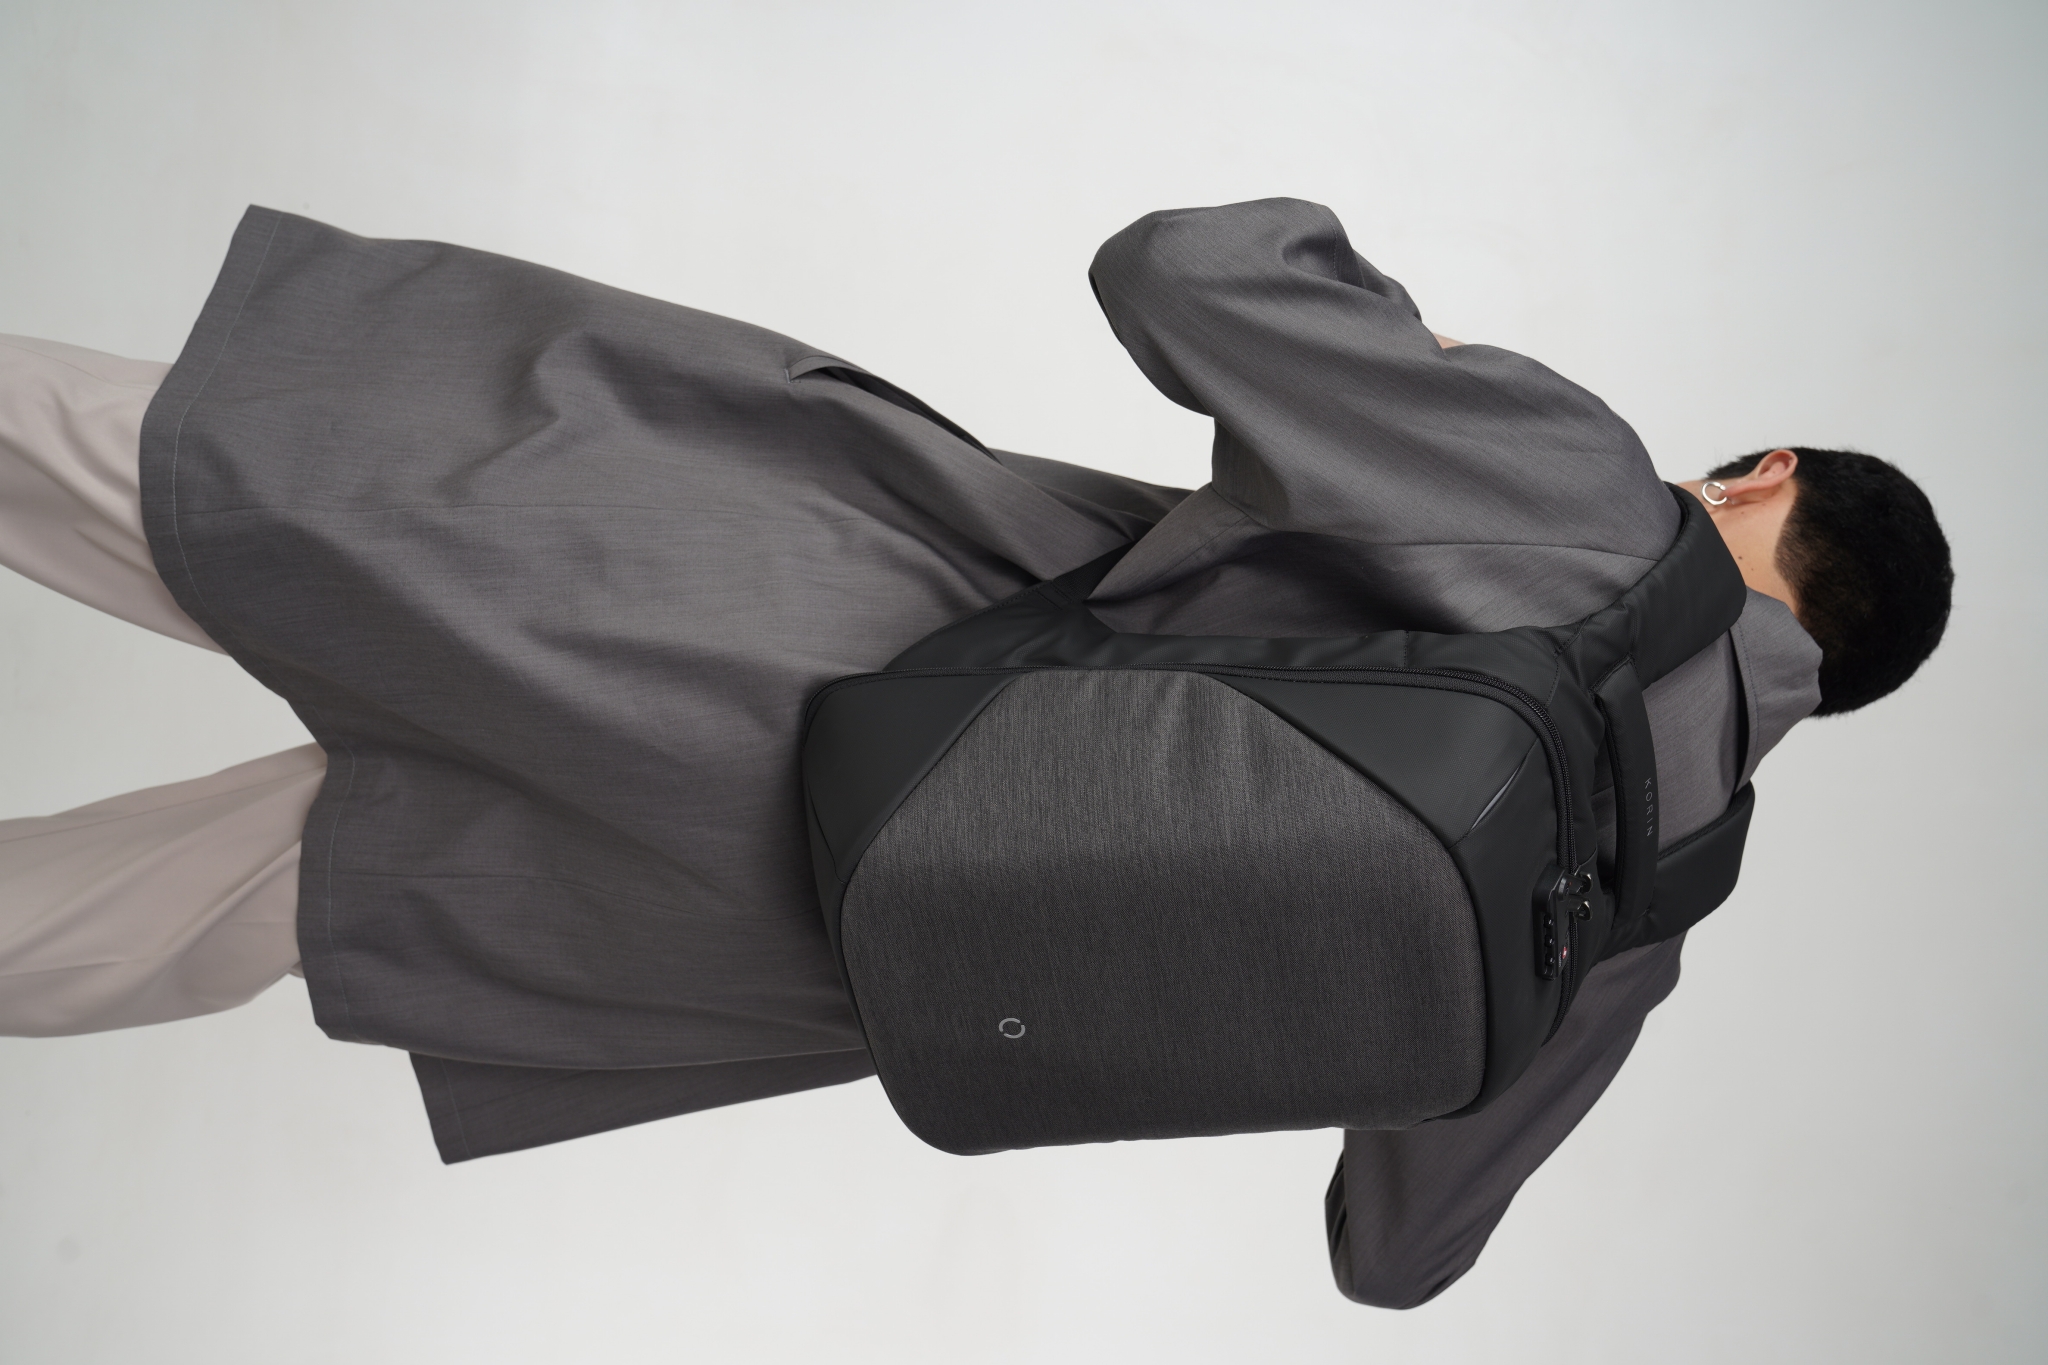 Рюкзак ClickPack 46х34х16 см, черный, #000000, полиэстер многослойного плетения, многослойный материал водоотталкивающий